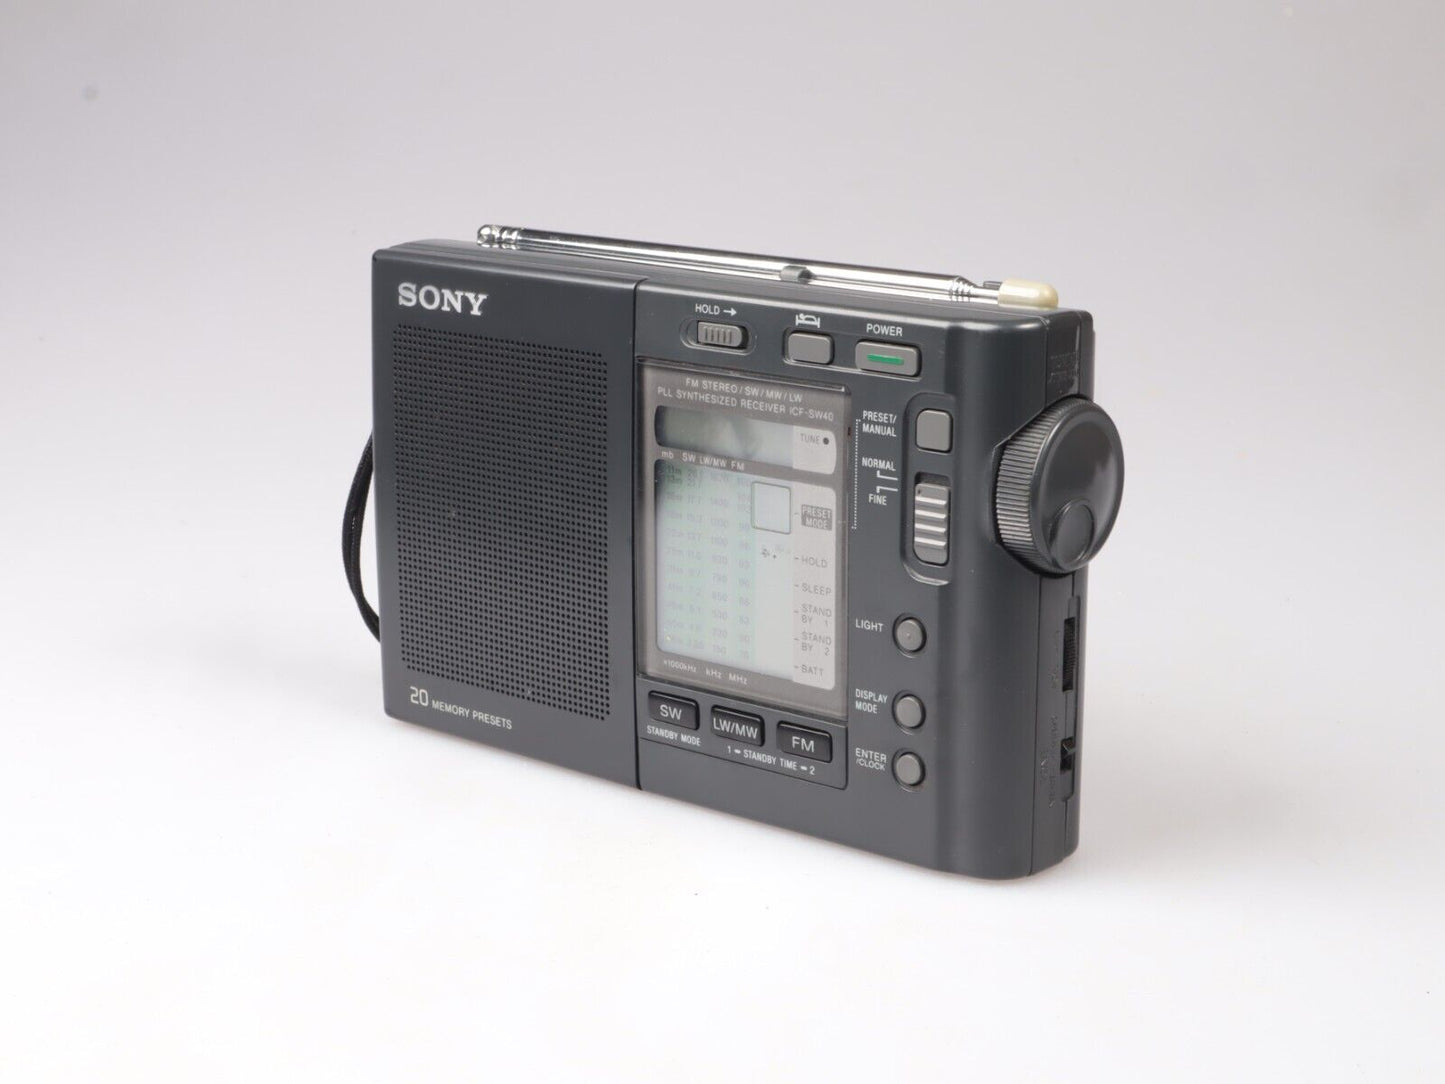 Sony LCF SW40 Radio | FM LW MW SW WORLD BAND Vintage Portable Radio